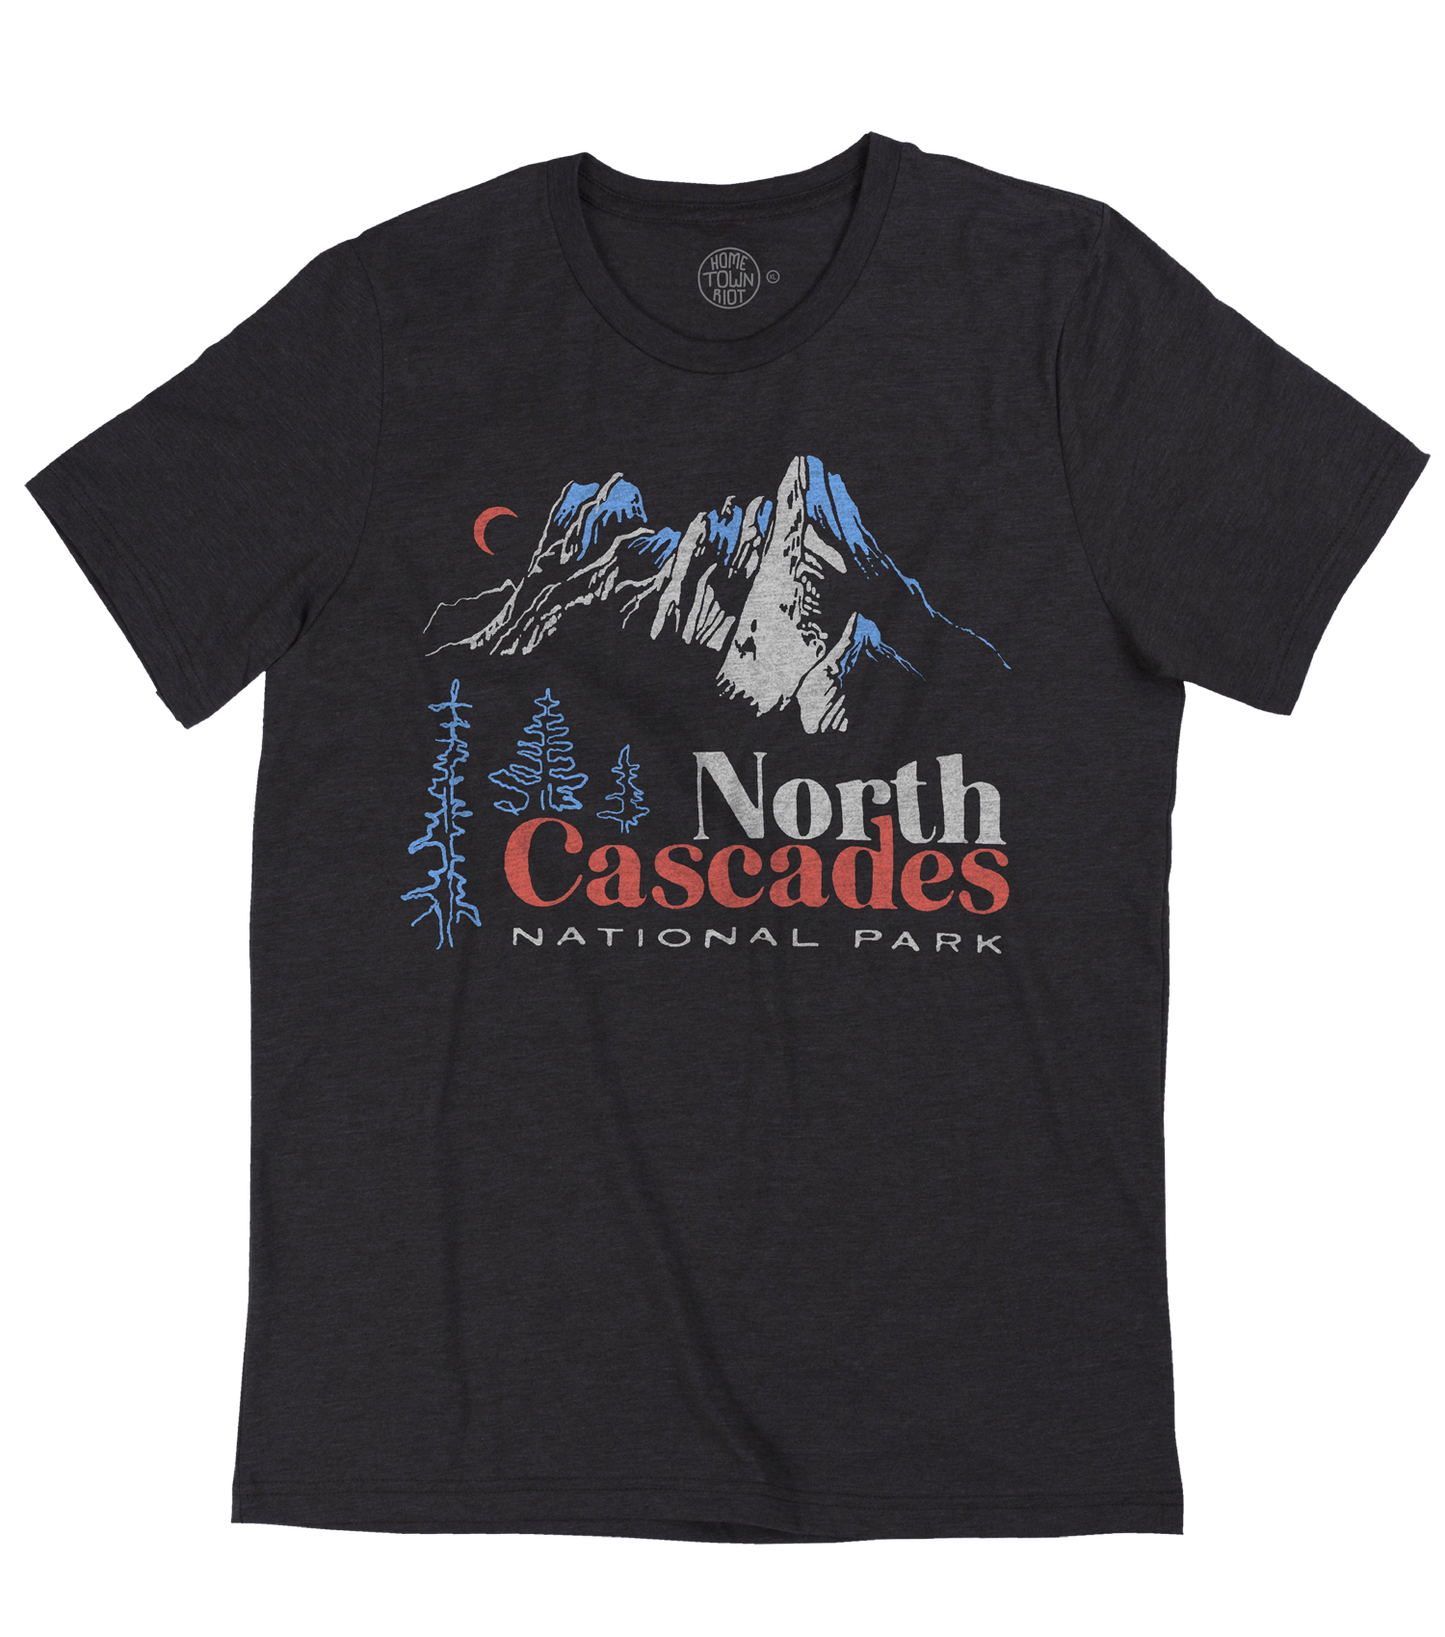 North Cascades National Park Shirt